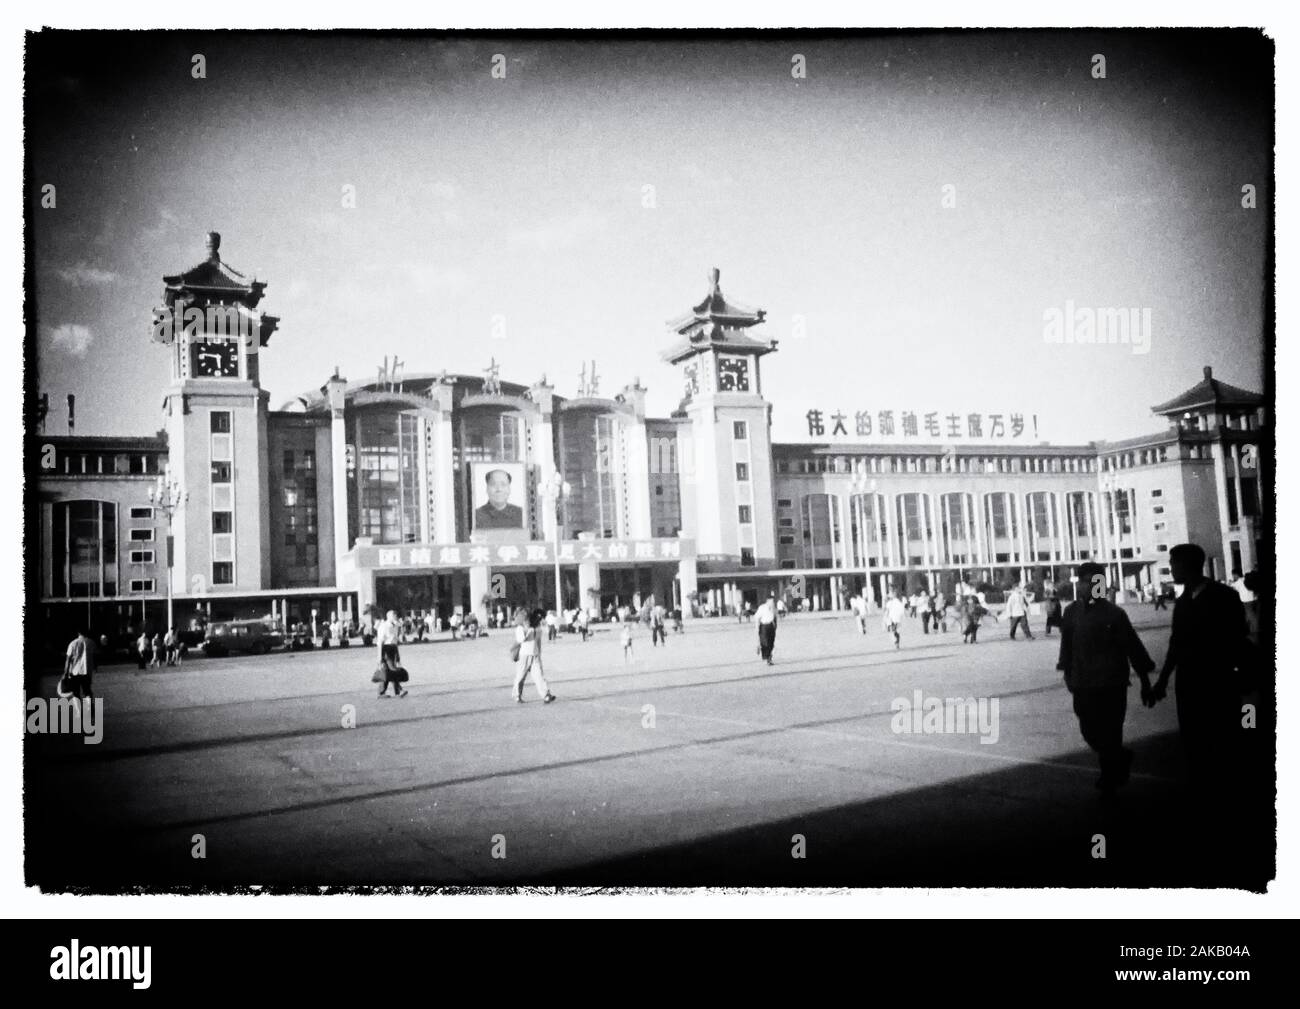 1959 Foto: estación de trenes de Beijing (Chino simplificado: 北京火车站; Chino tradicional: 北京火車站; pinyin: Běijīng Huǒchēzhàn) o, simplemente, la estación de Pekín (en chino: 北京站; pinyin: Běijīngzhàn), es una estación de trenes de pasajeros en Dongcheng District, Beijing. La estación está situada al sureste del centro de la ciudad dentro de la segunda carretera de circunvalación con Beijing Station Street al norte y los restos de la muralla de la ciudad entre Dongbianmen Chongwenmen y hacia el sur. La estación de trenes de Beijing abrió sus puertas en 1959 y fue la mayor estación de tren en China en el momento. Foto de stock